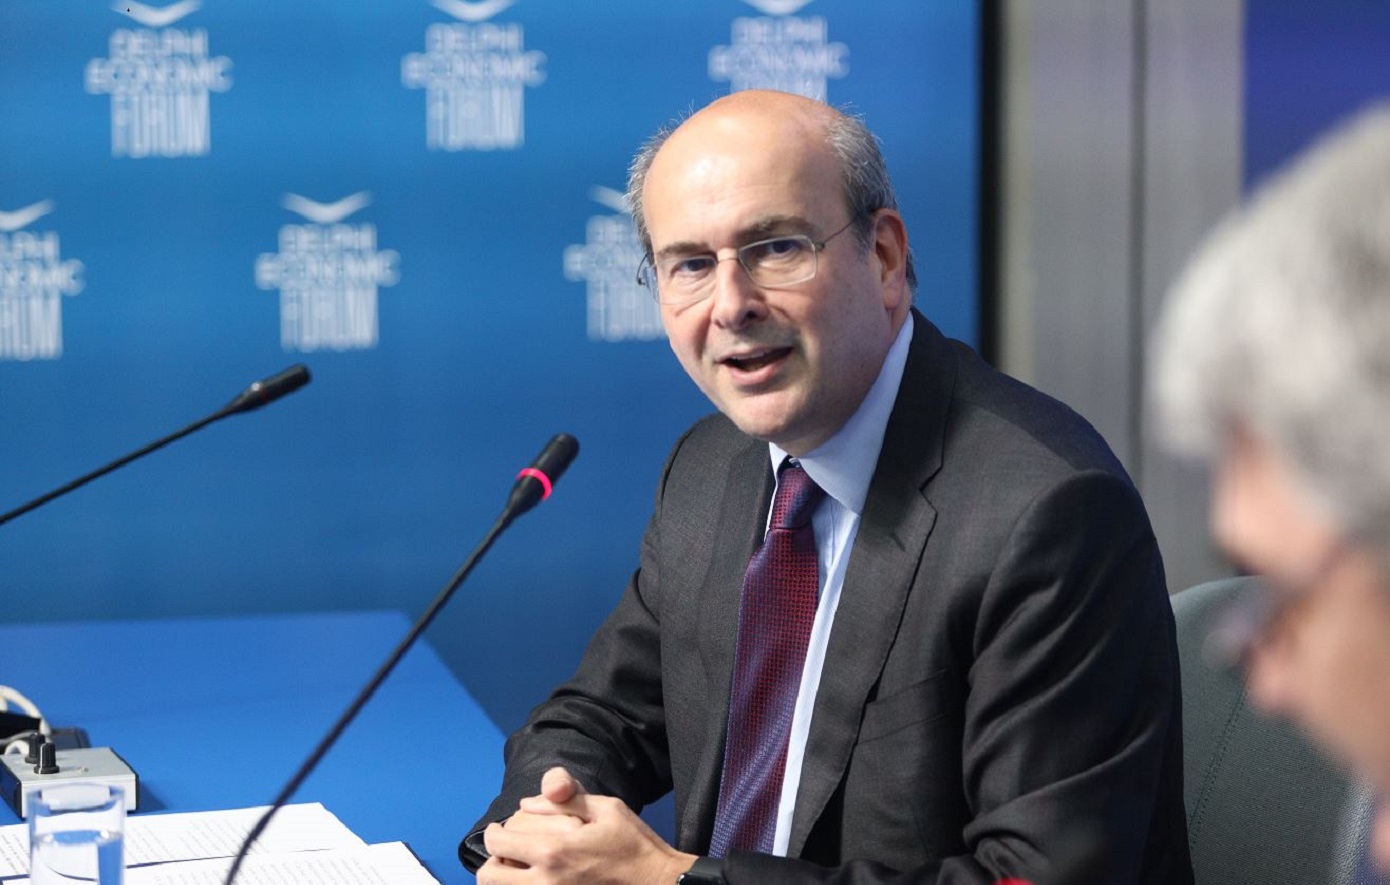 Χατζηδάκης στο Ecofin: Η Ελλάδα είναι πρωτοπόρα στις απορροφήσεις και μεταρρυθμίσεις του Ταμείου Ανάκαμψης